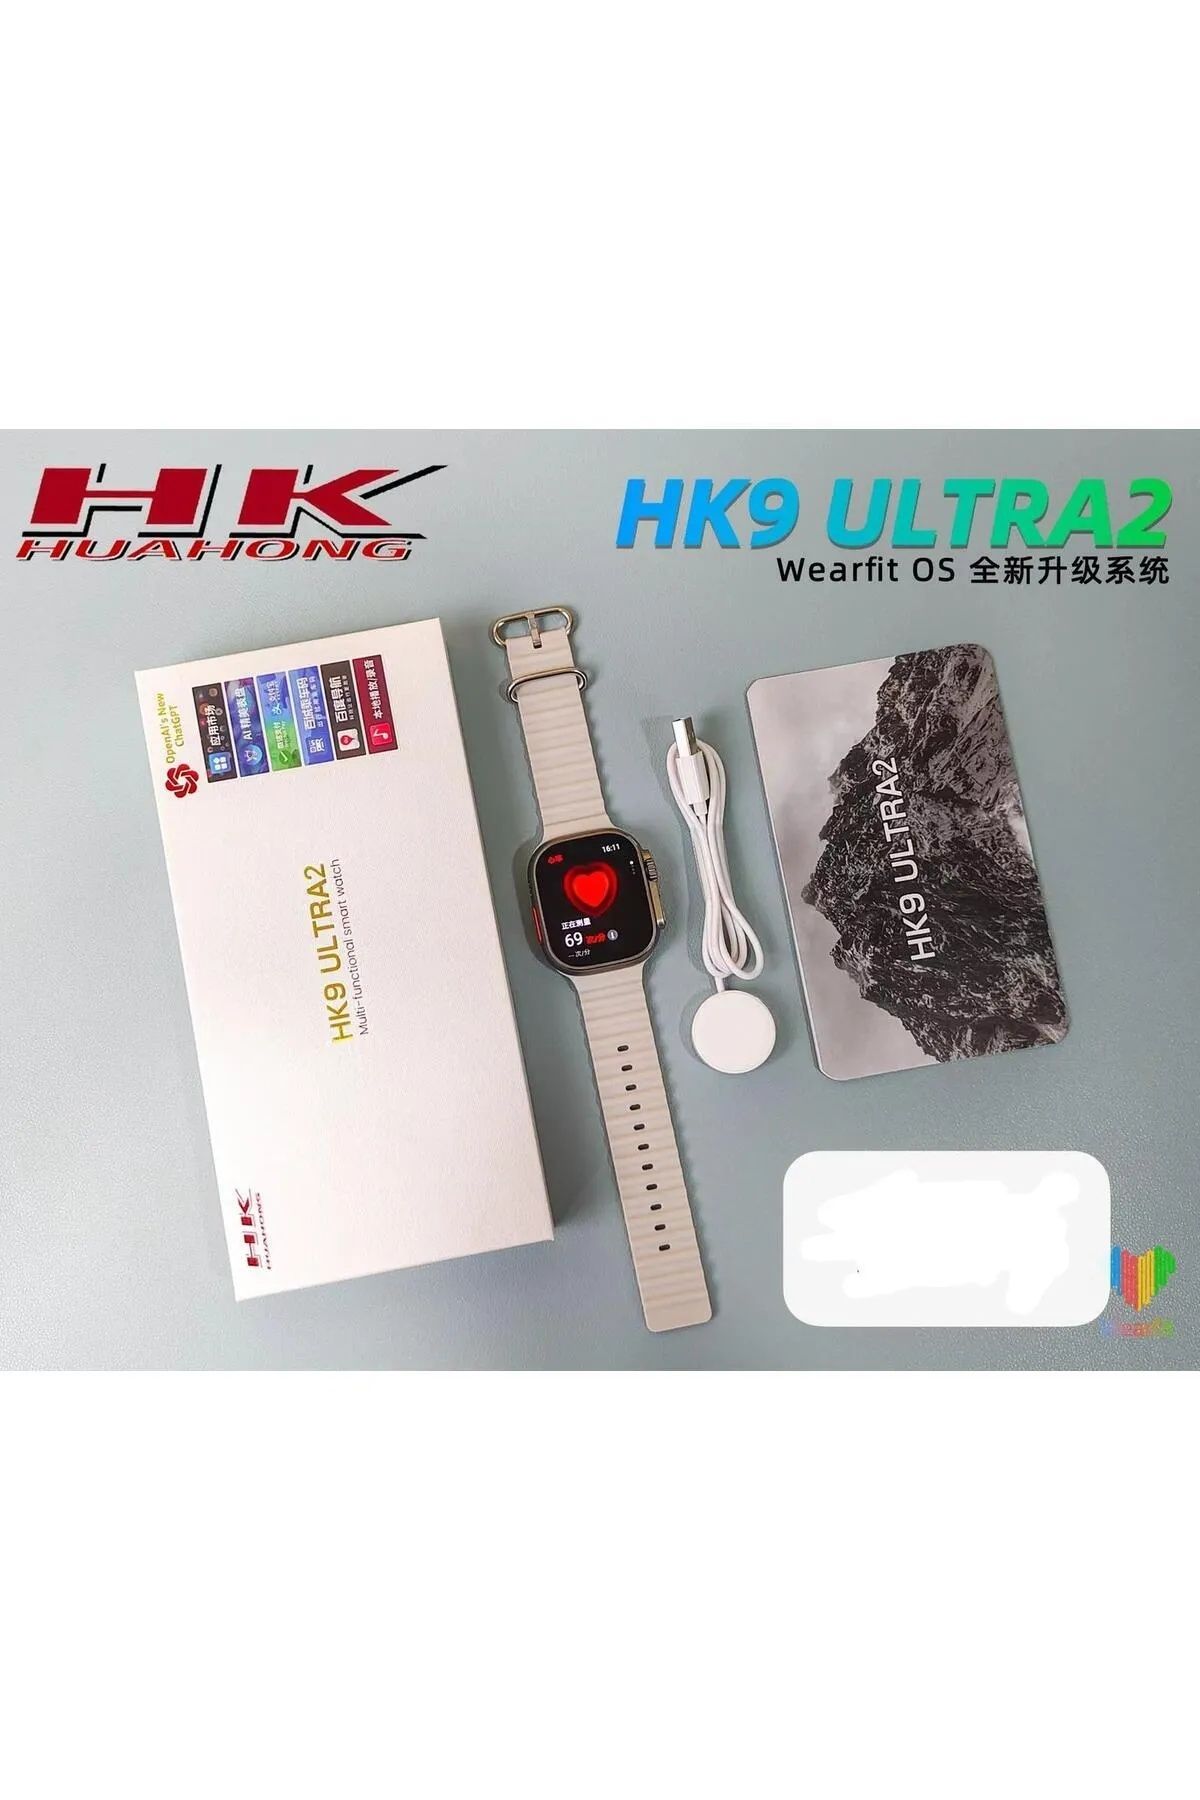 Watch HK9 ULTRA 2 - Amoled Ekran (49mm)